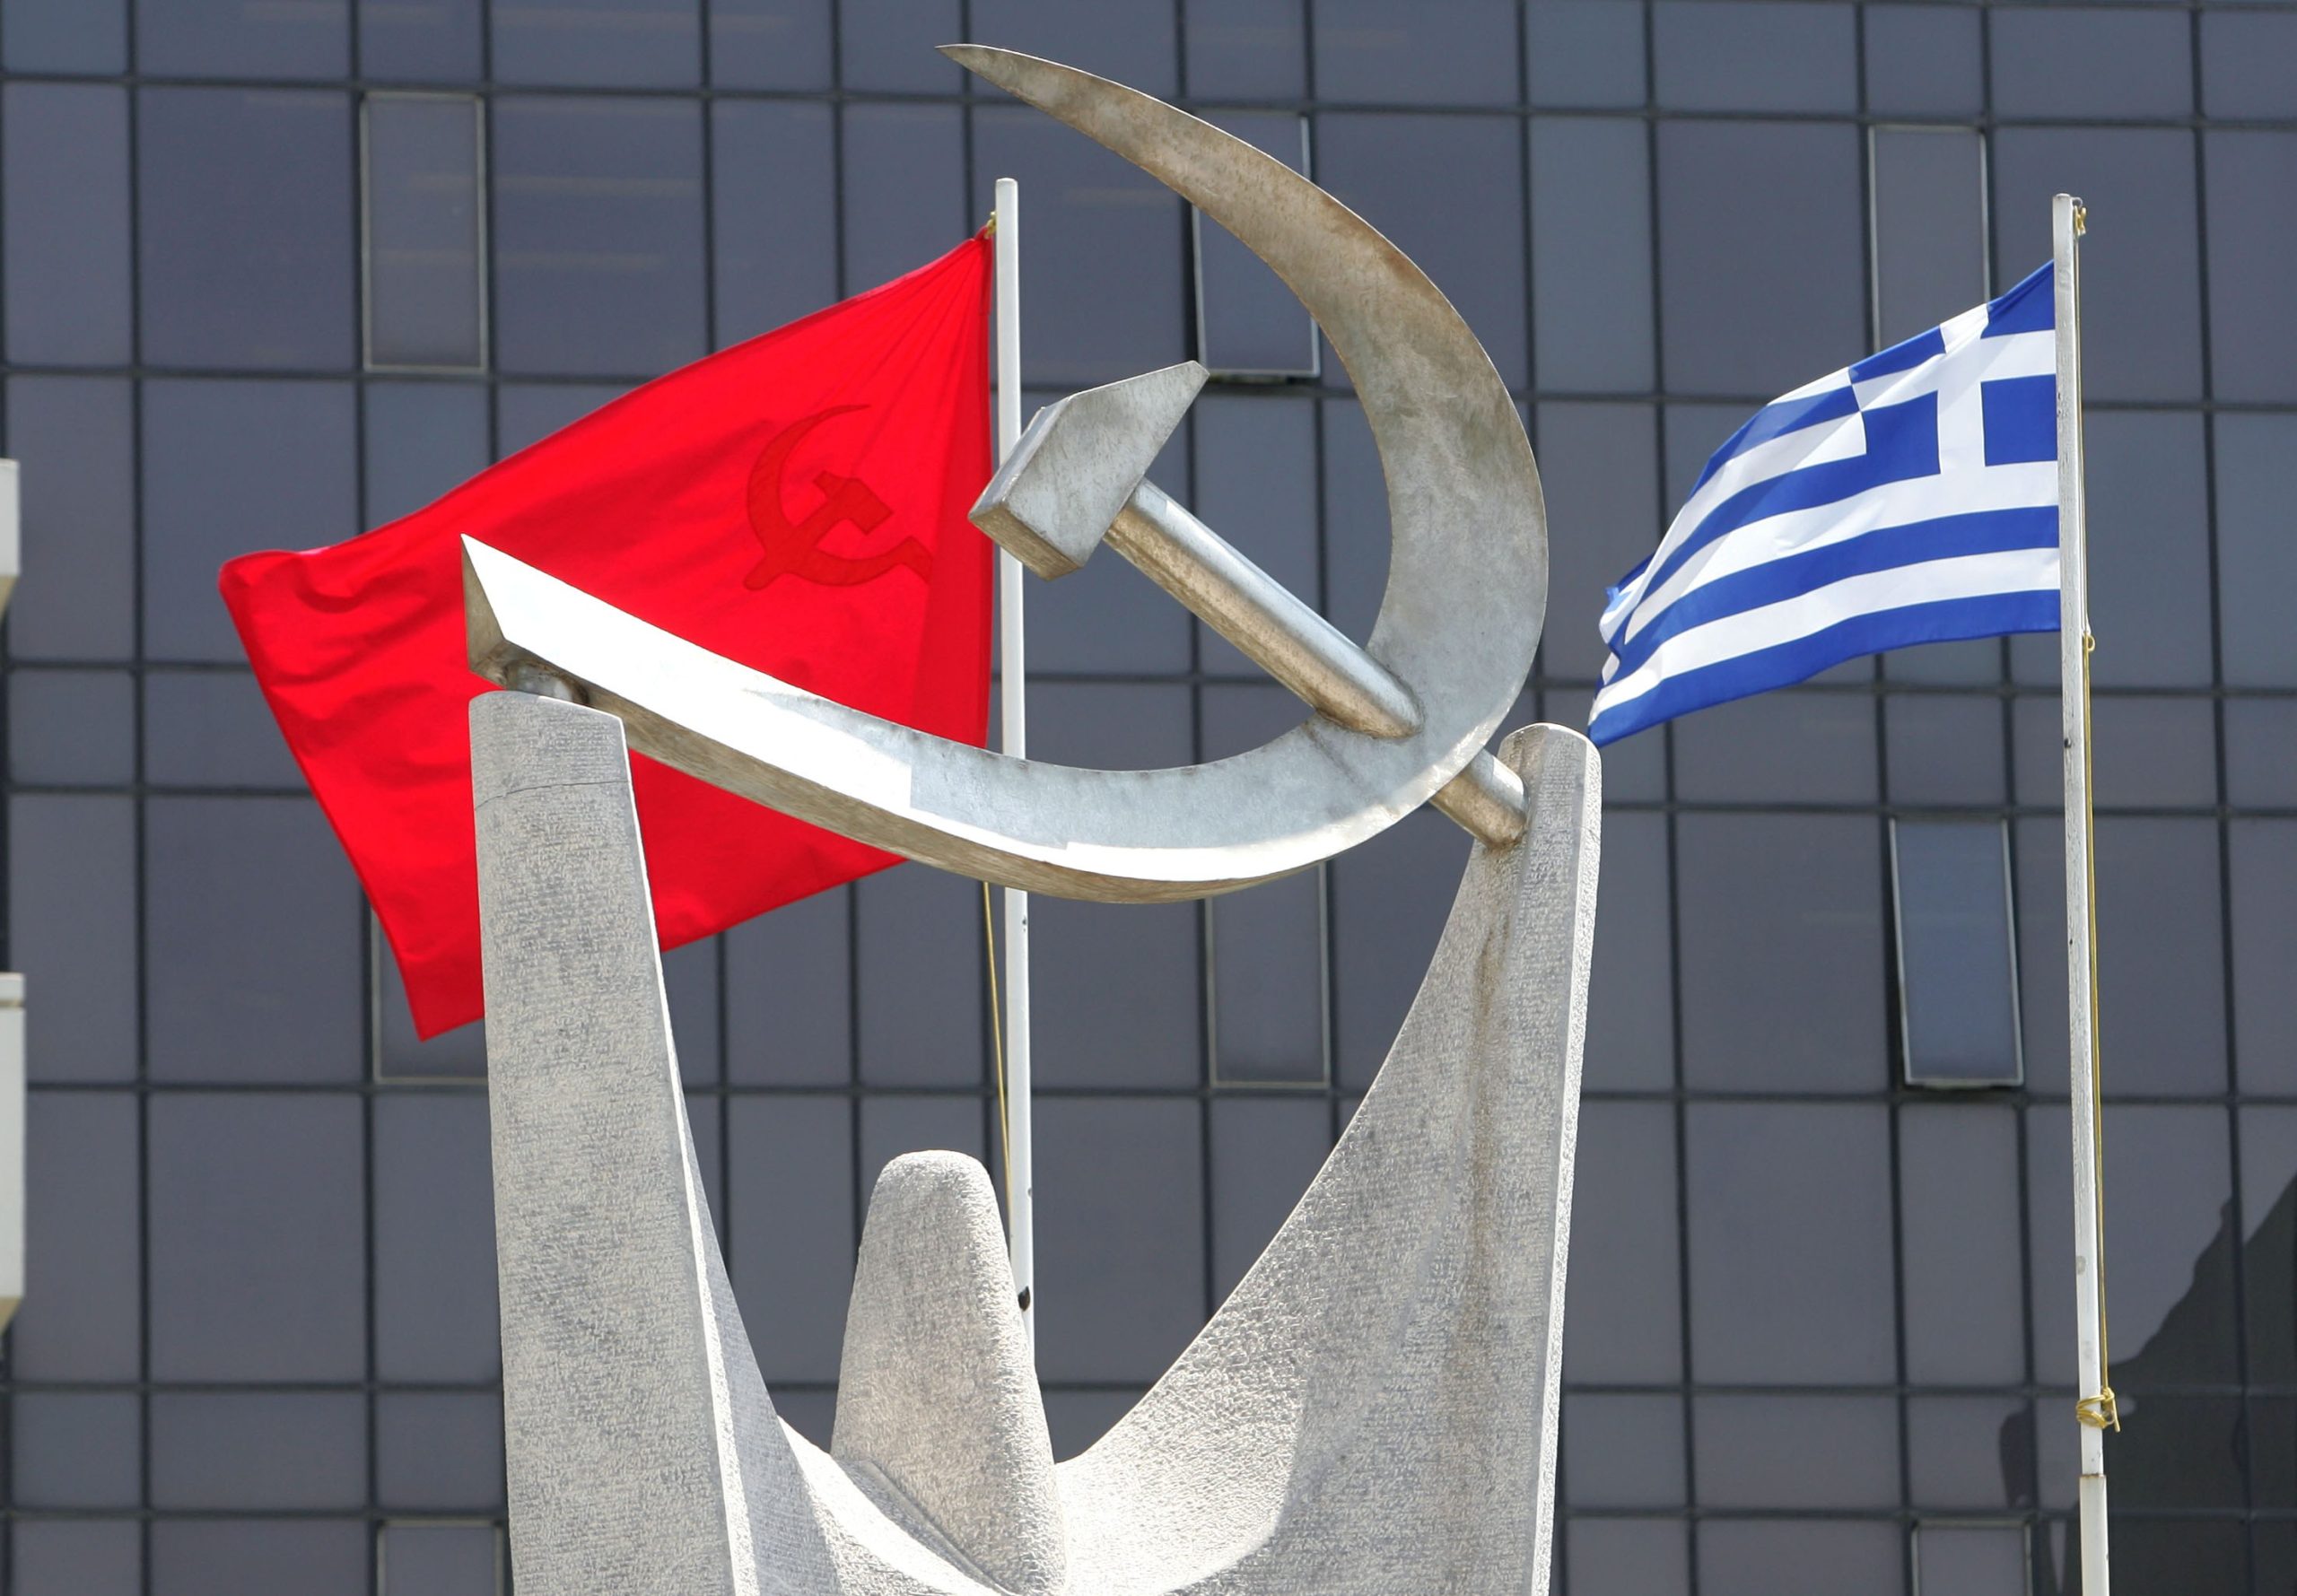 ΚΚΕ: «Η εκμετάλλευση της εκτέλεσης του ομογενούς από εθνικιστικές προκαλεί ανησυχία»